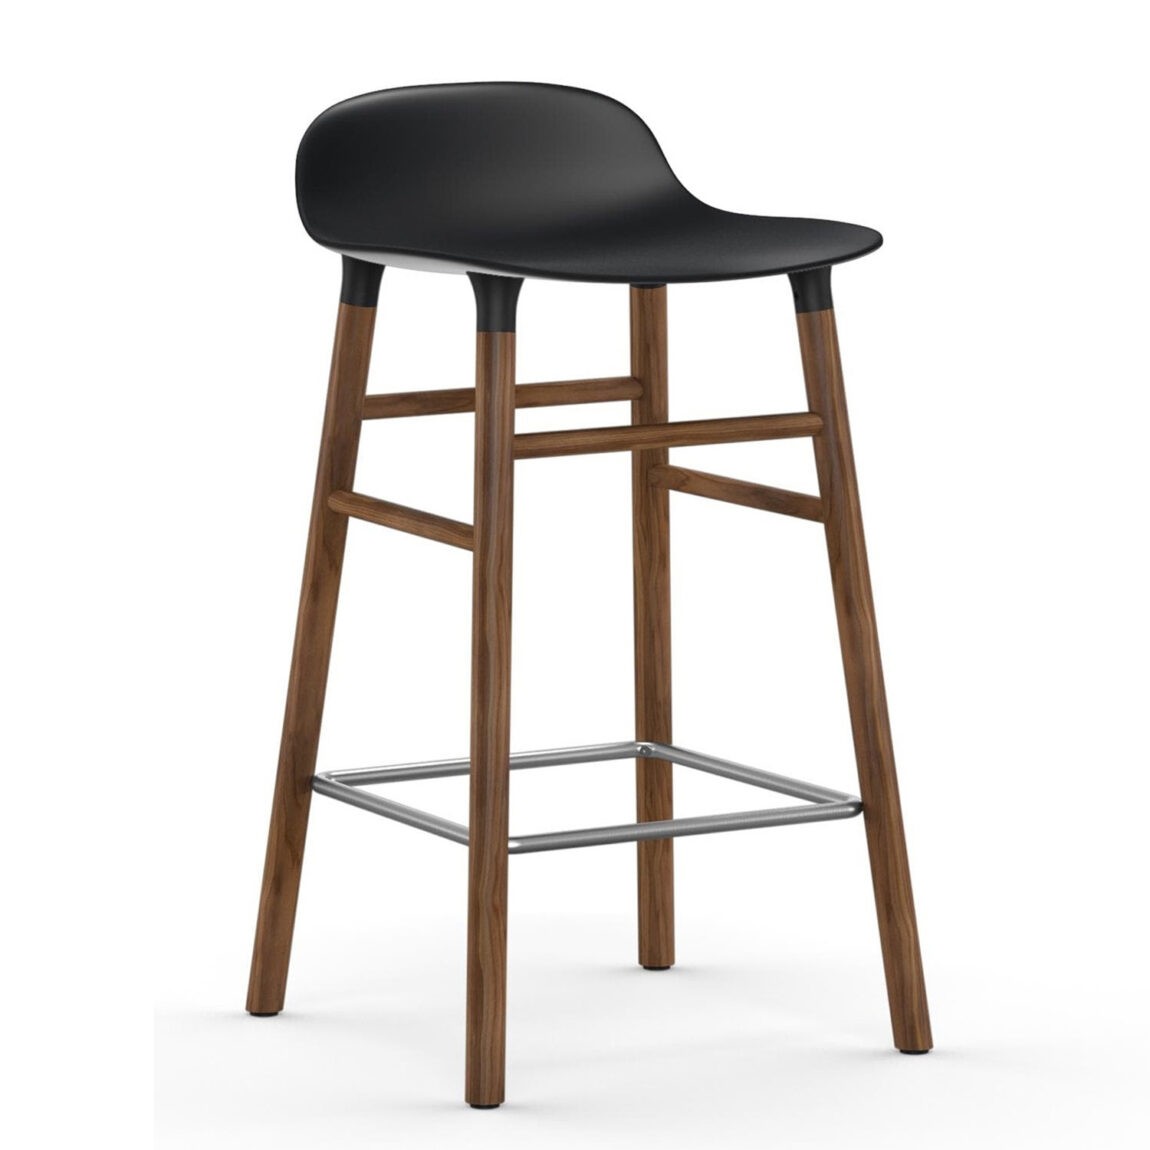 Výprodej Normann Copenhagen designové barové židle Form Barstool